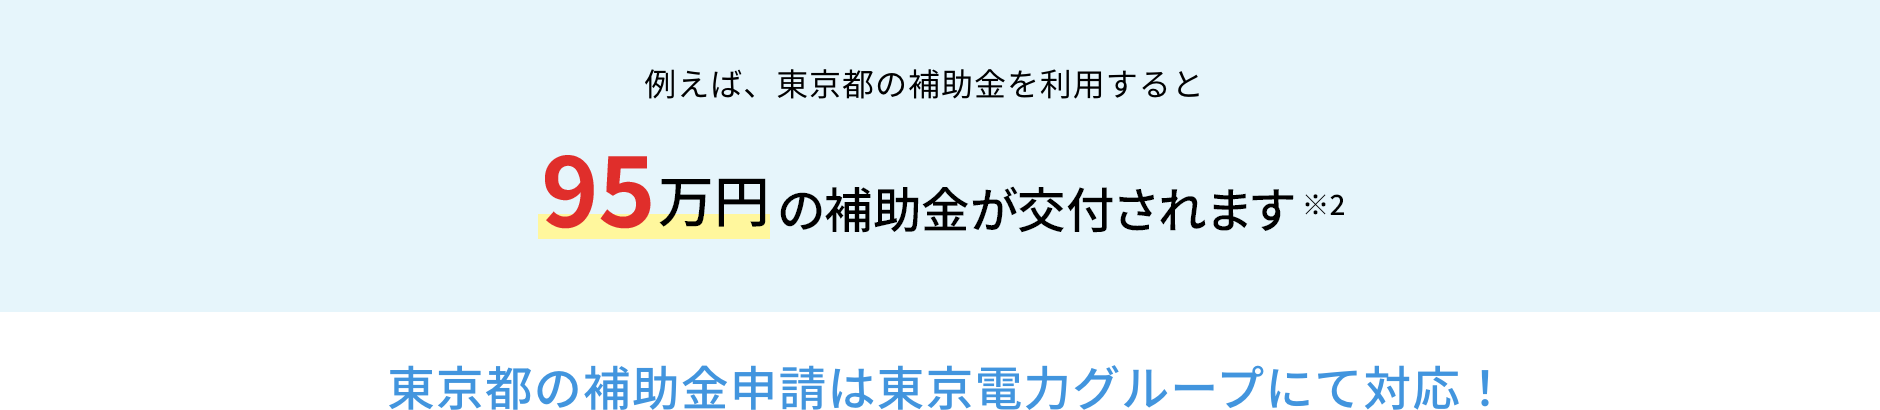 例えば、東京都の補助金を利用すると95万円の補助金が交付されます※2 東京都の補助金申請は東京電力グループにて対応！